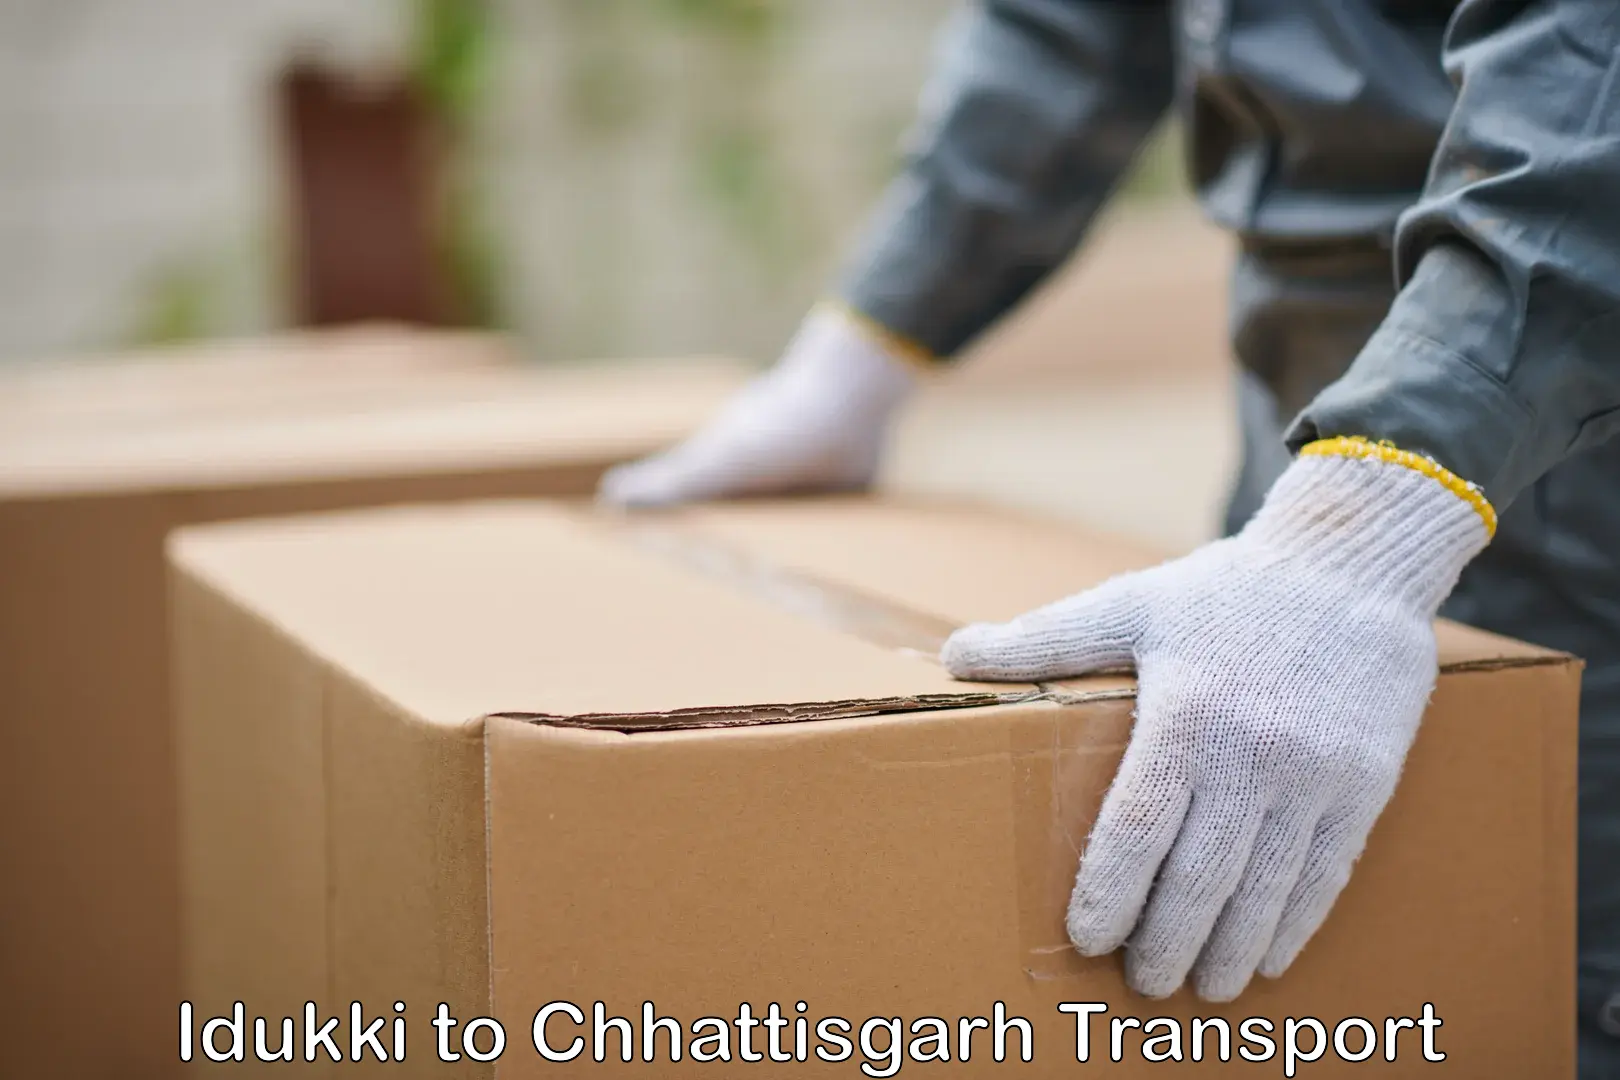 Road transport online services Idukki to Chhattisgarh